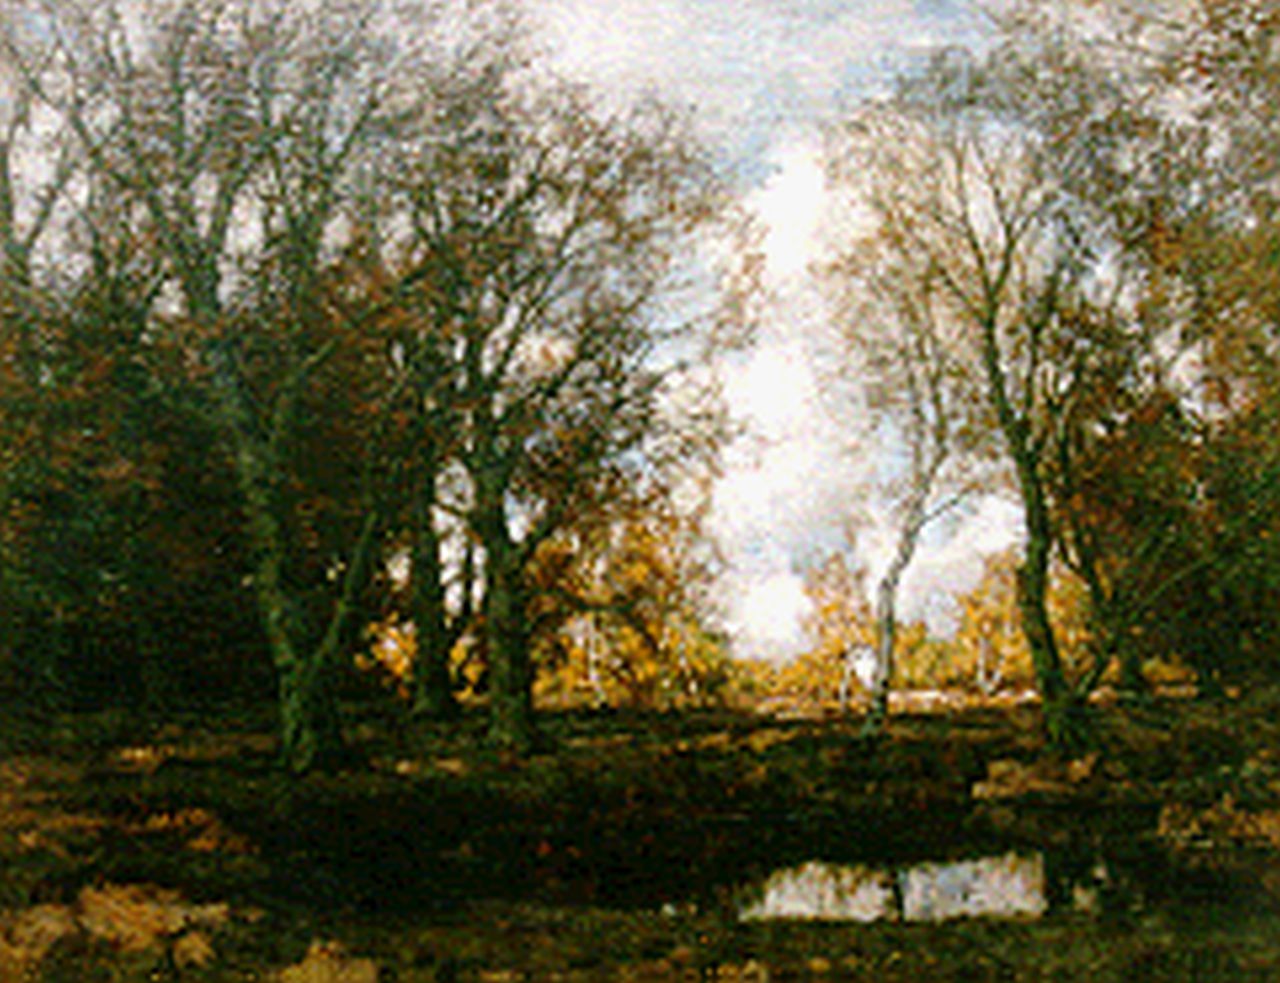 Gorter A.M.  | 'Arnold' Marc Gorter, Birches along the Vordense beek in autumn, Öl auf Leinwand 75,5 x 95,5 cm, signed l.r.